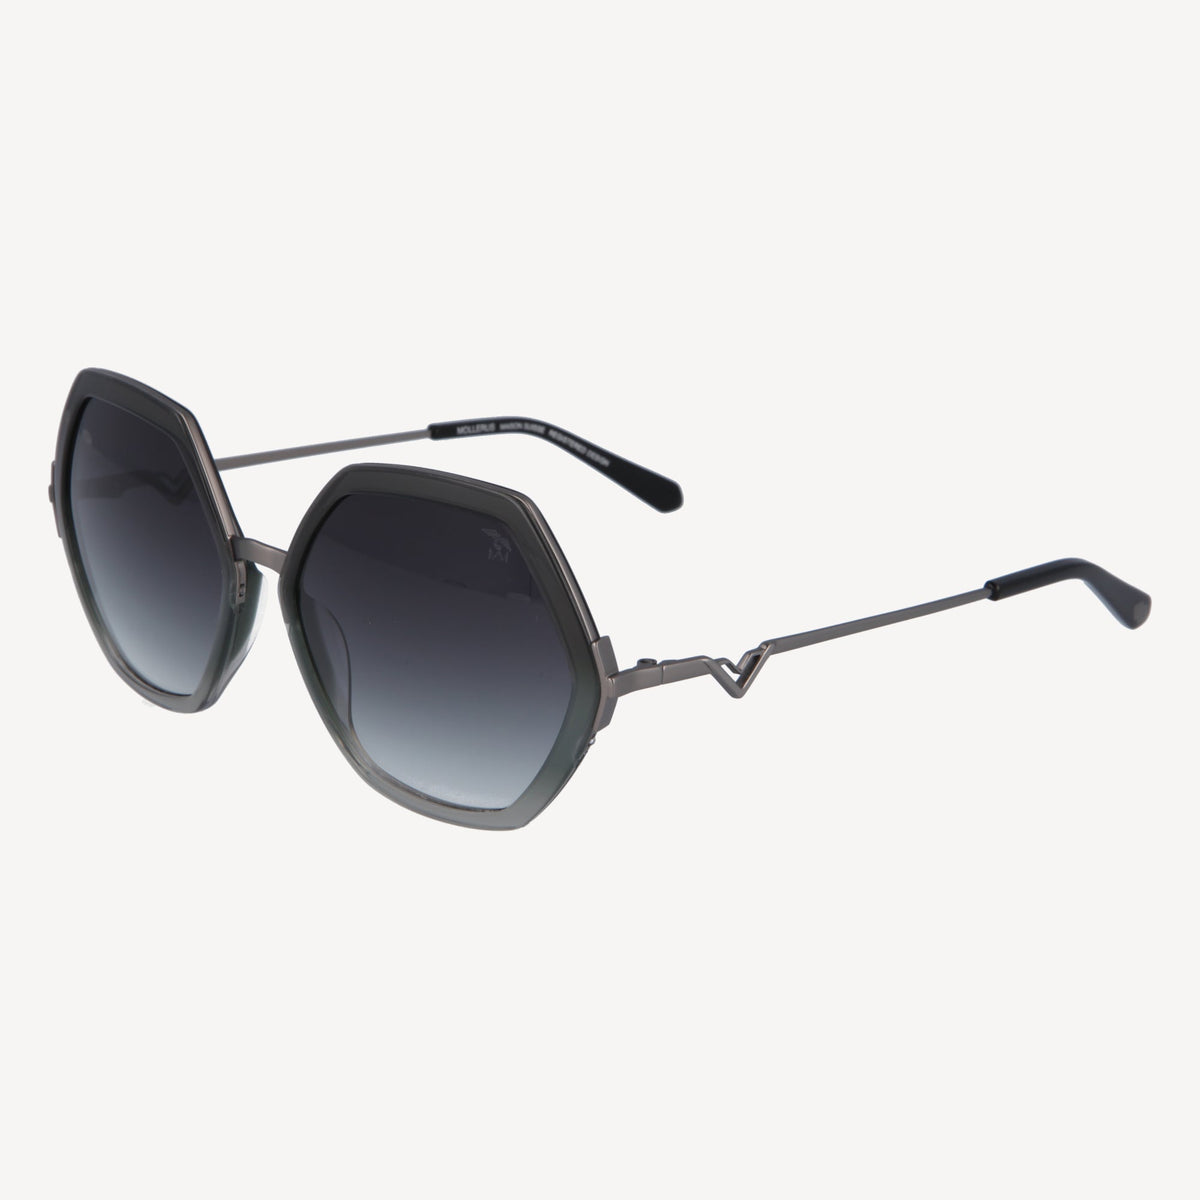 AGNEL | Sonnenbrille classic schwarz/altsilber